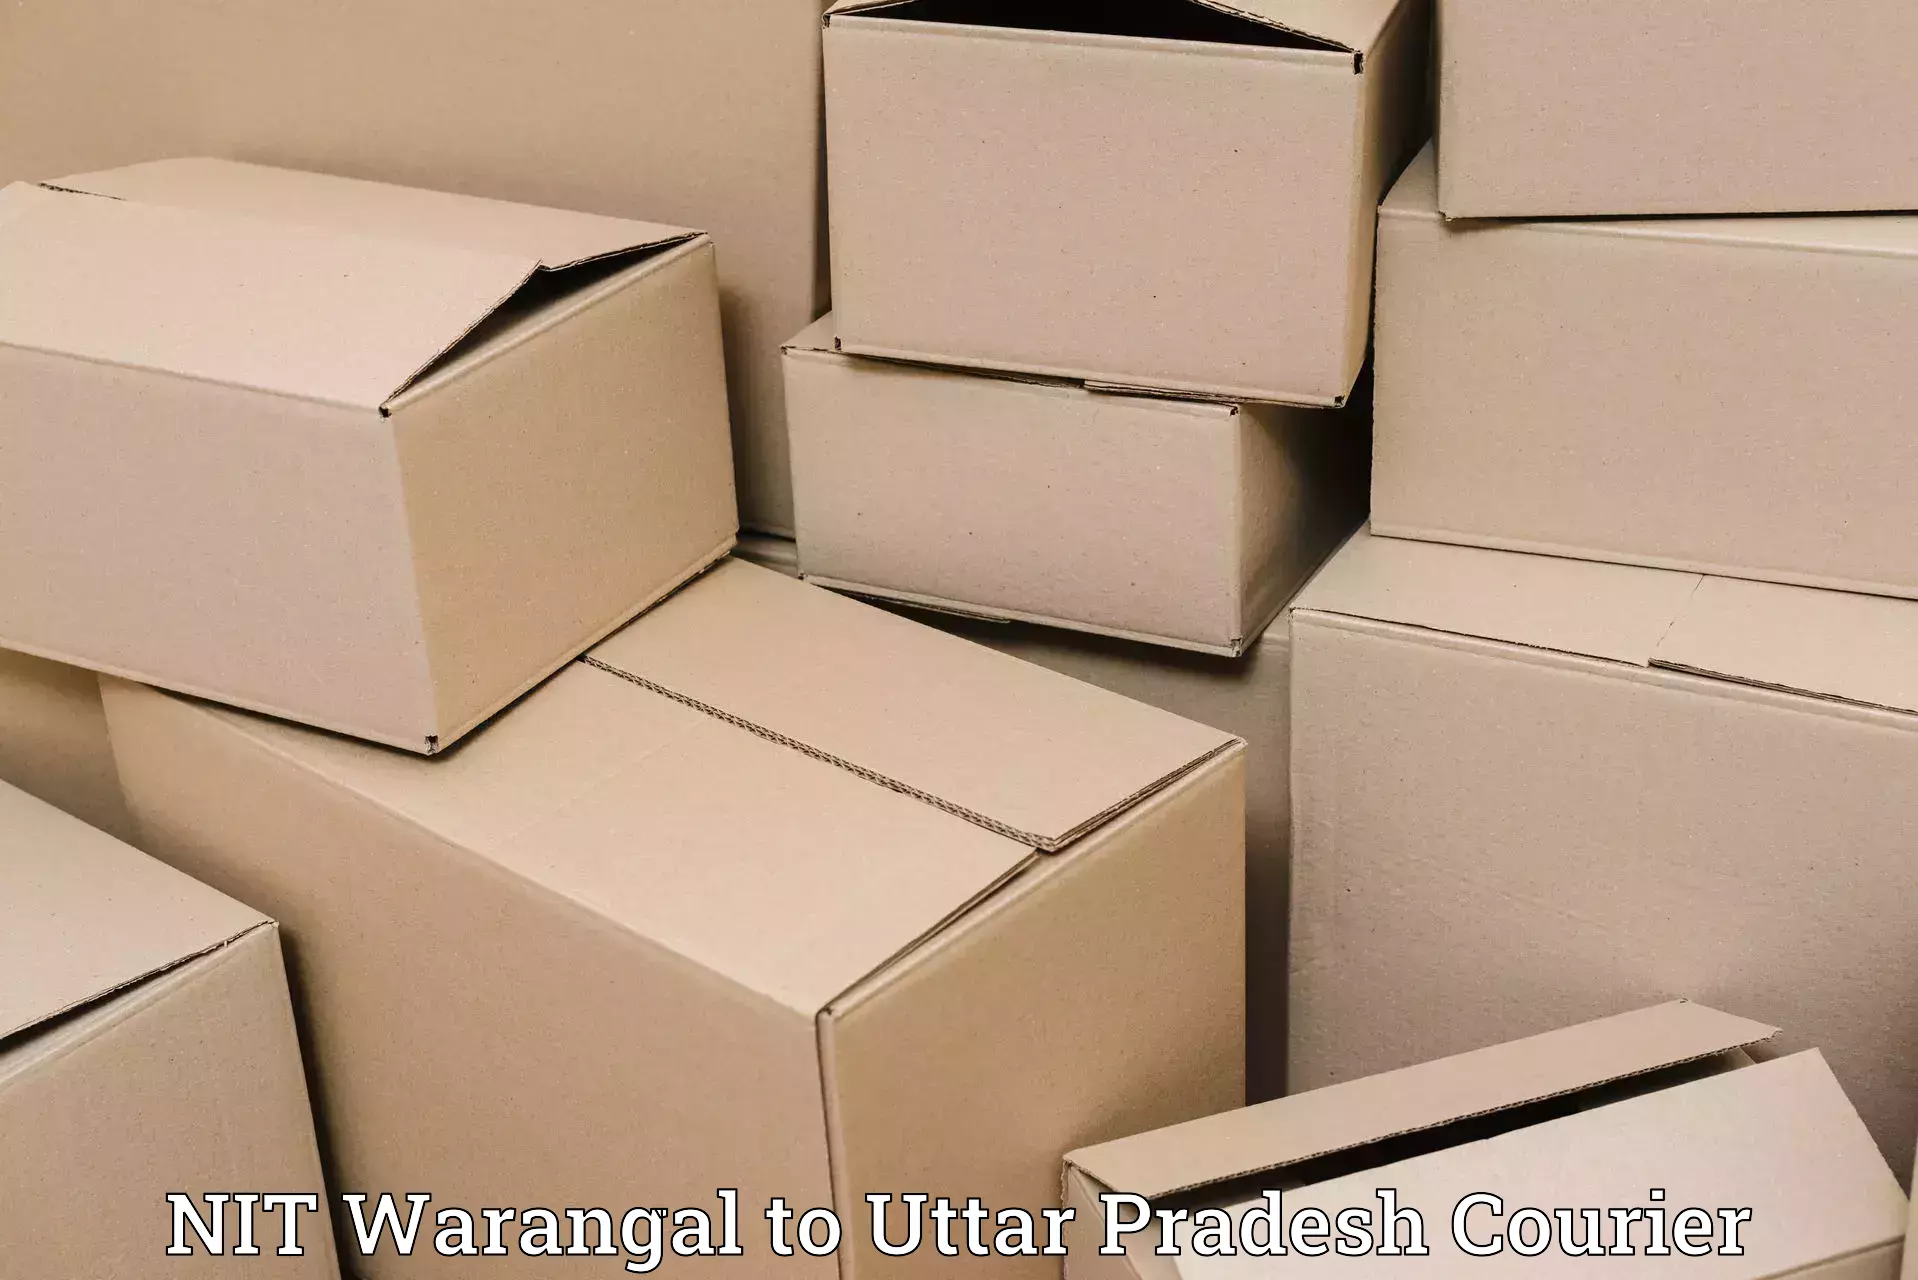 Affordable international shipping in NIT Warangal to Gosainganj